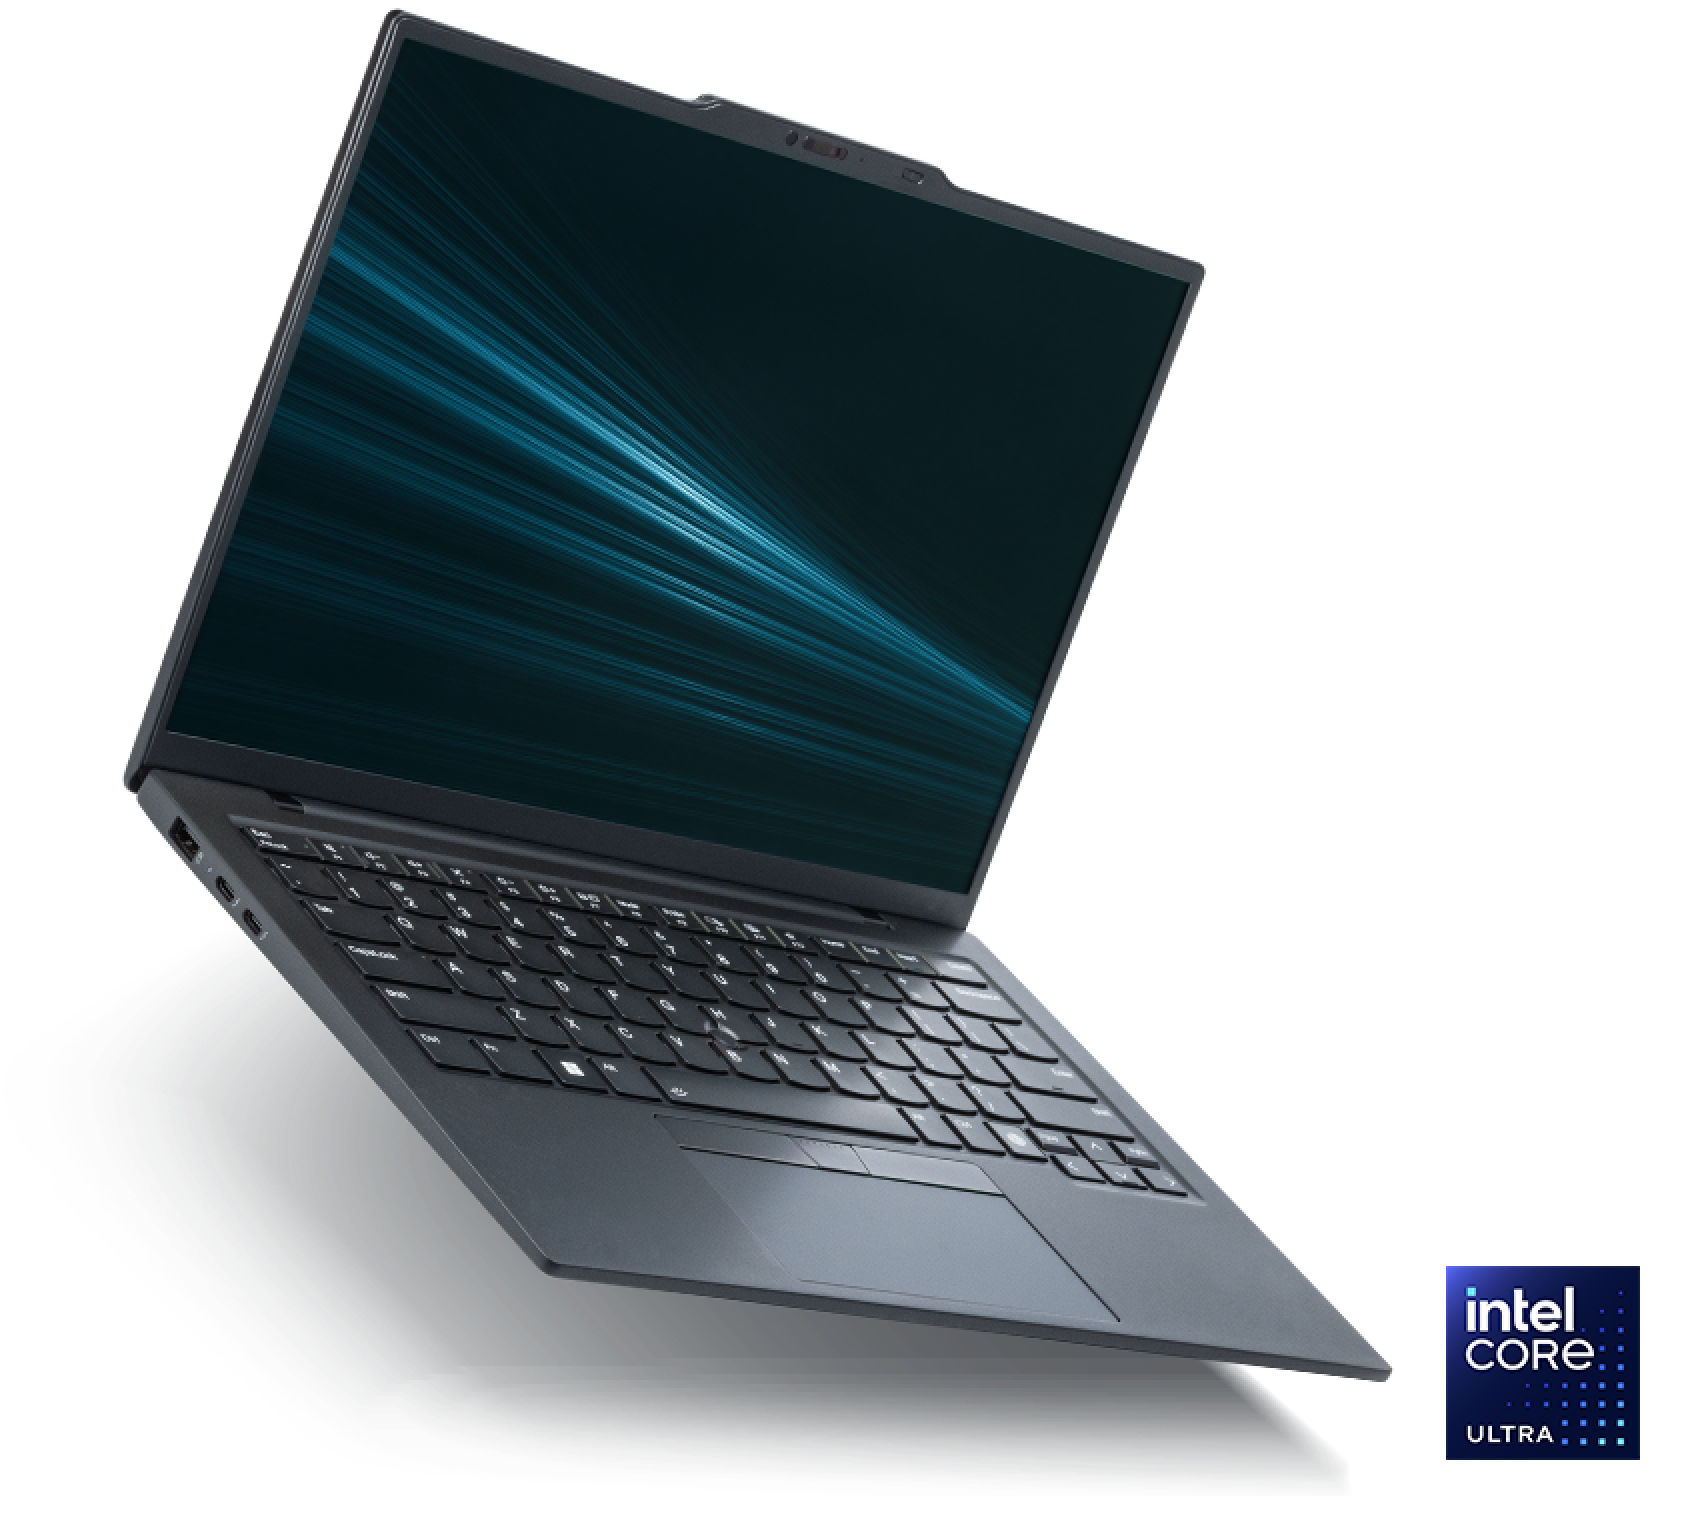 แล็ปท็อป Intel Evo Edition ที่มาพร้อมกับโปรเซสเซอร์ Intel Core Ultra